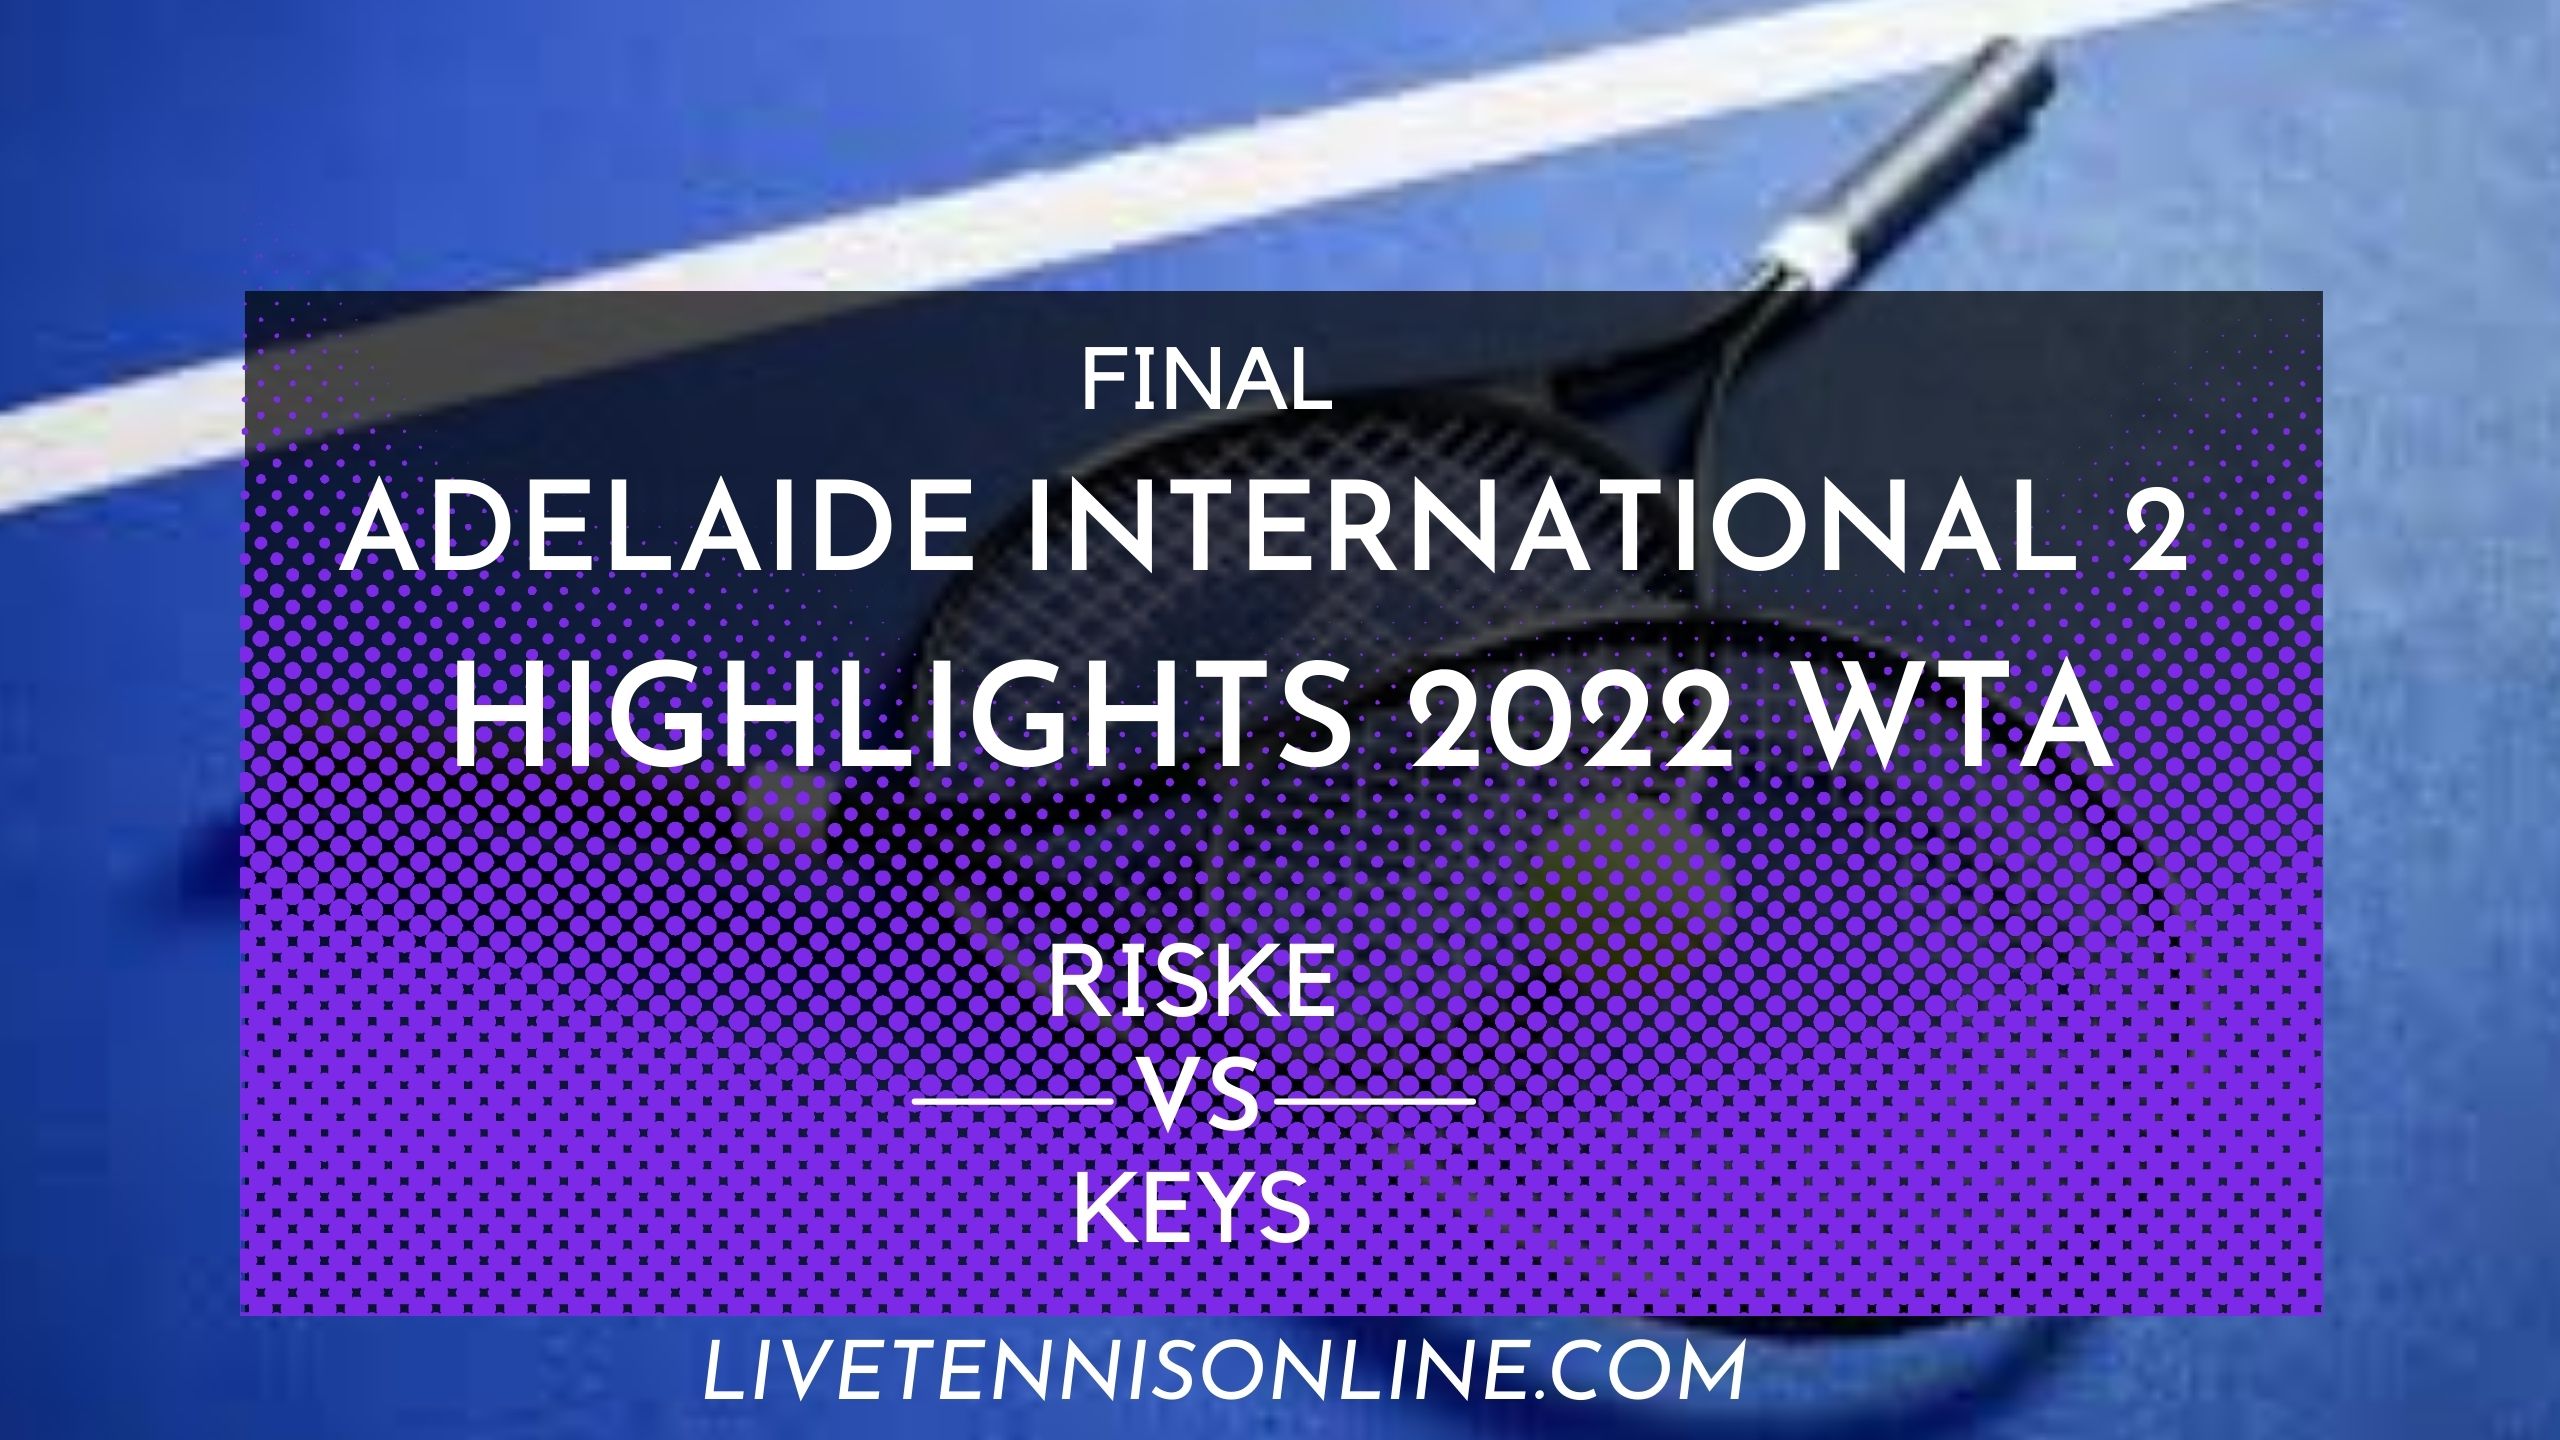 Riske Vs Keys Final Highlights 2022 Adelaide 2